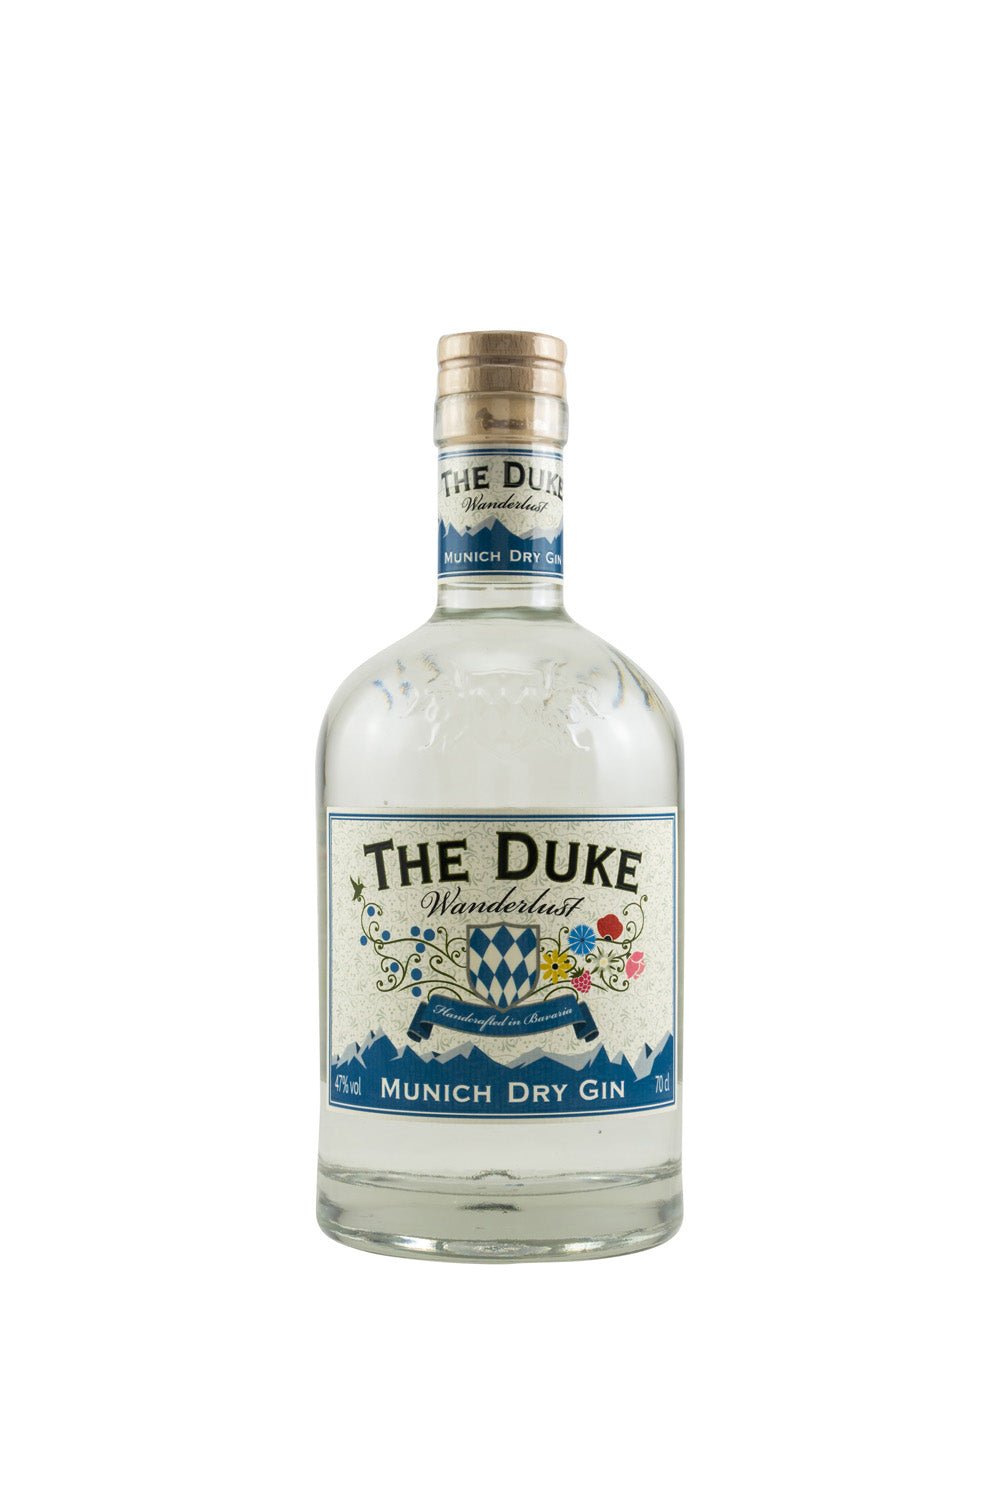 The Duke Wanderlust Munich Dry Gin Bio 47% vol. 700ml - Maltimore